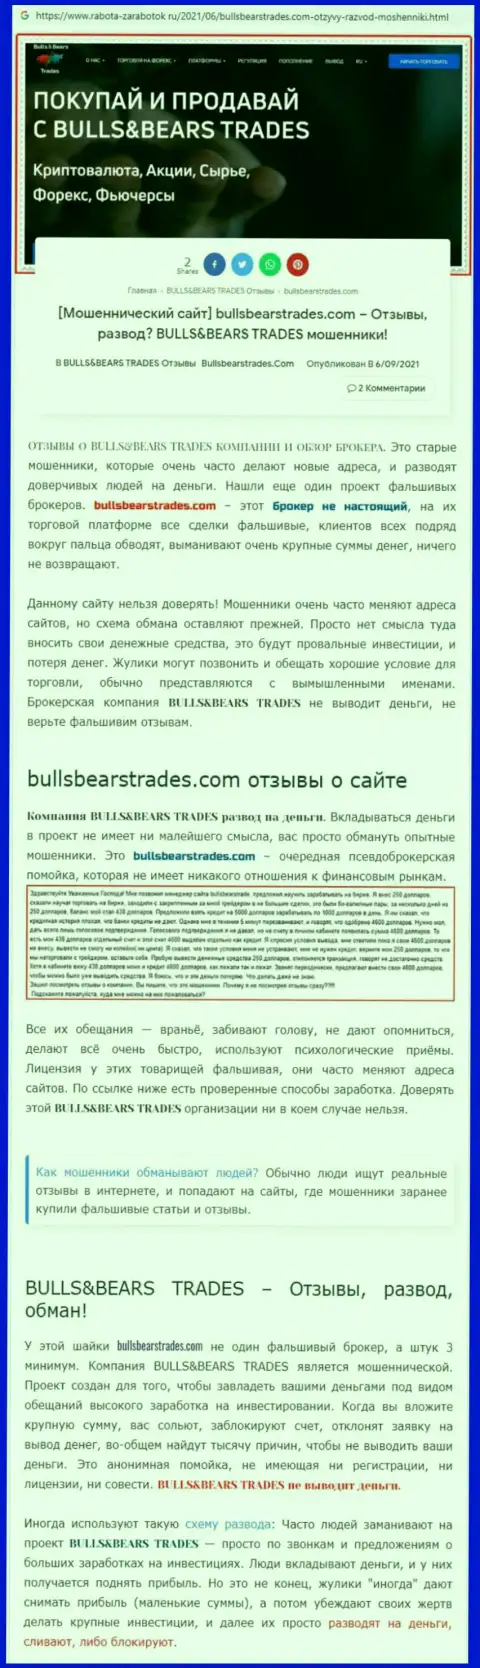 Обзор противоправно действующей организации BullsBearsTrades Com про то, как обворовывает клиентов